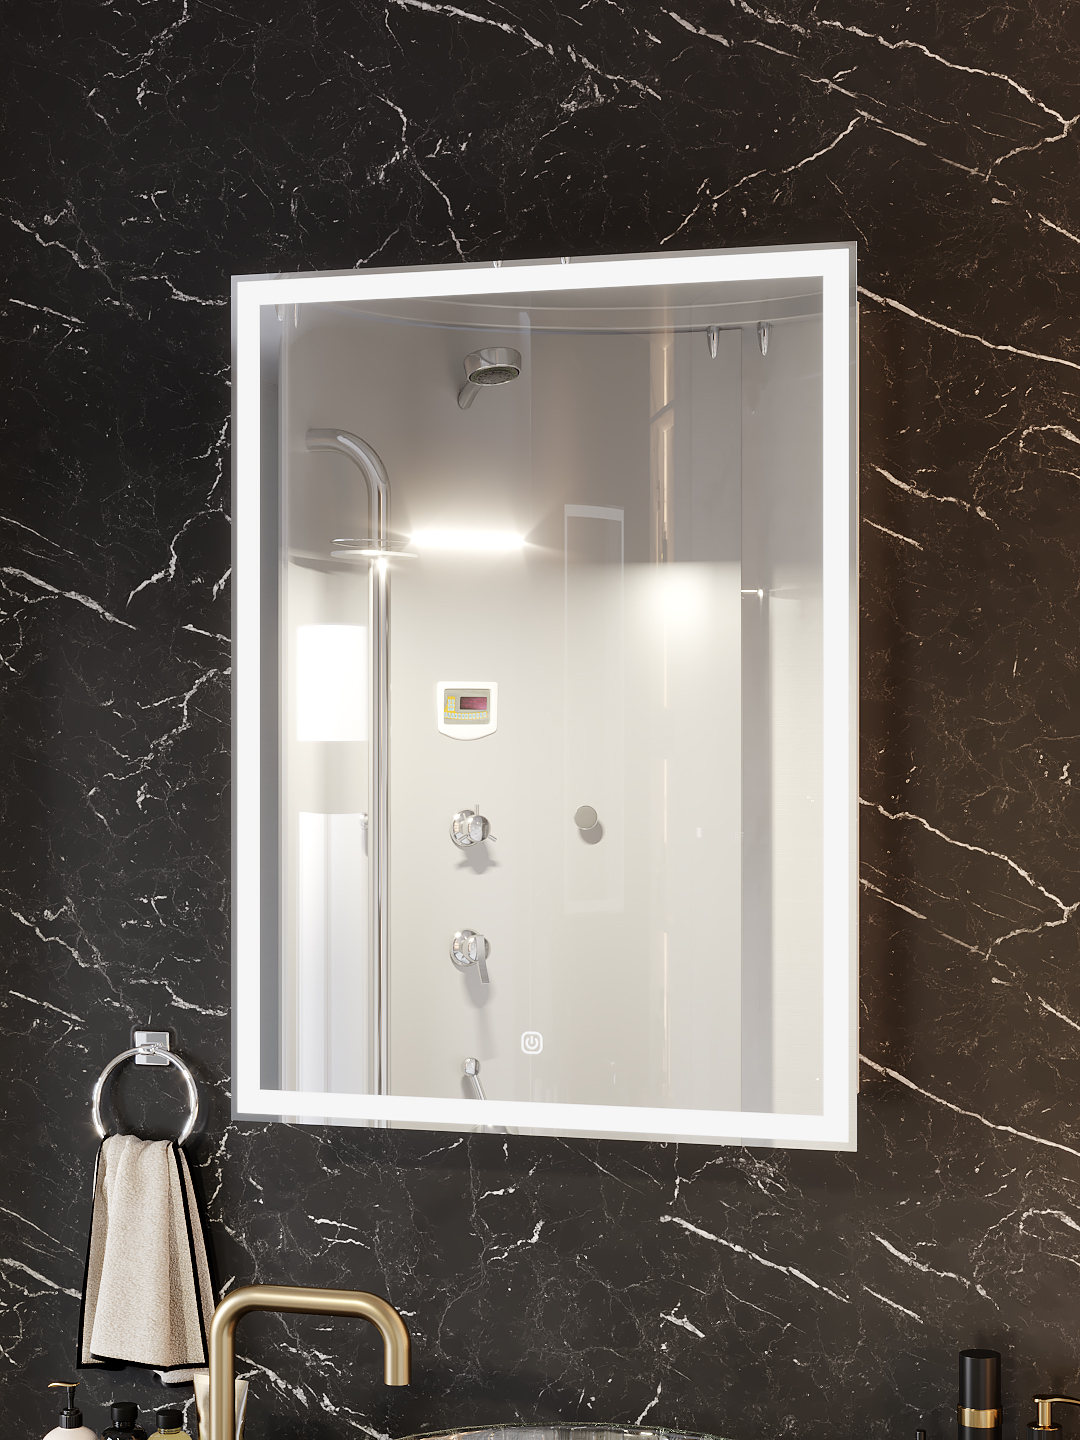 Зеркало-шкаф SANTREK HOME с LED подсветкой левое "ФЕНИКС" 600х800мм